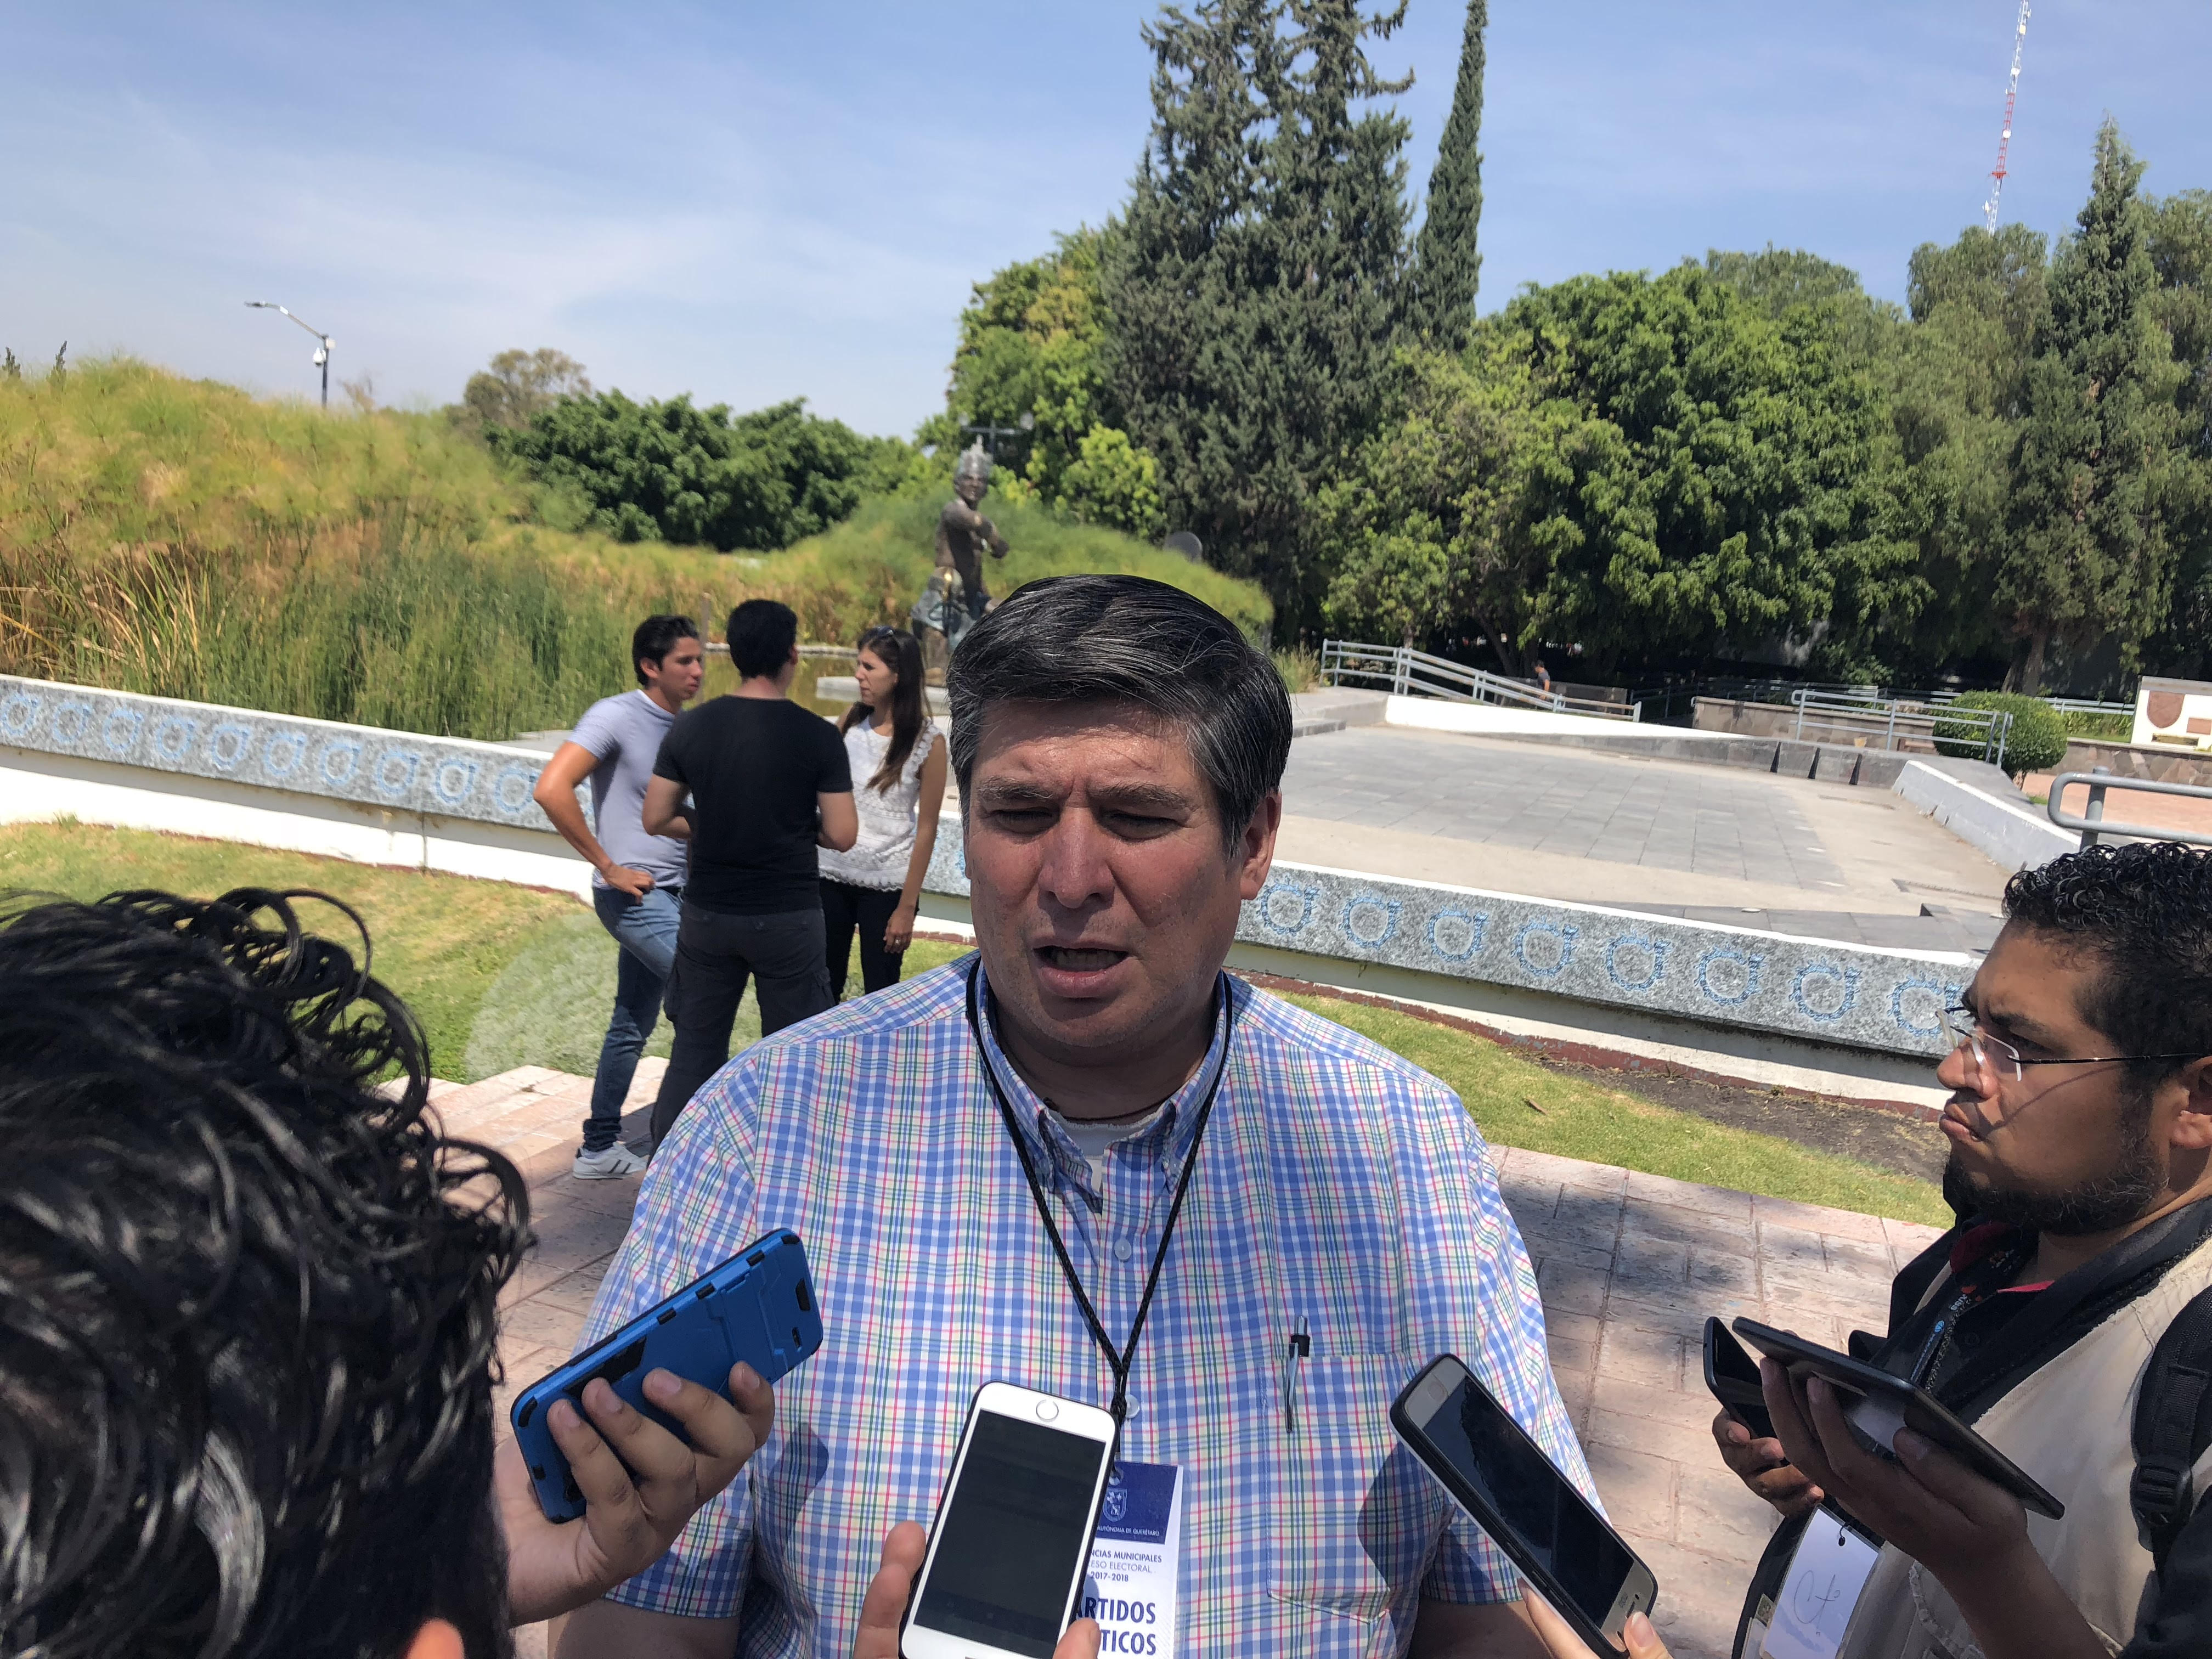  Cierre de campaña en Querétaro de “Juntos Haremos Historia” fue sin acarreados: Peñafiel